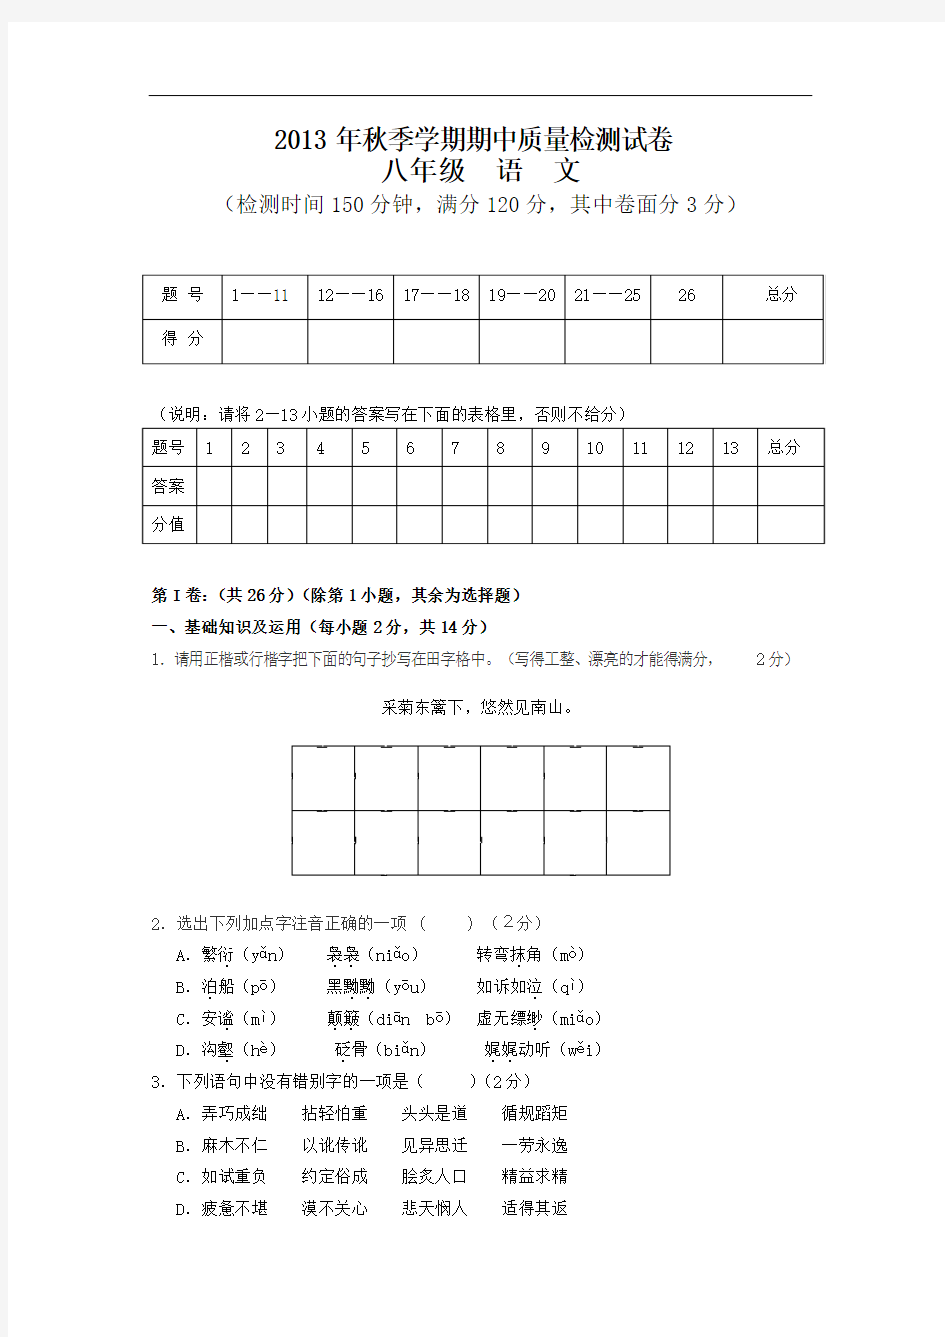 新版语文版语文试卷秋季学期八年级期中语文测试题